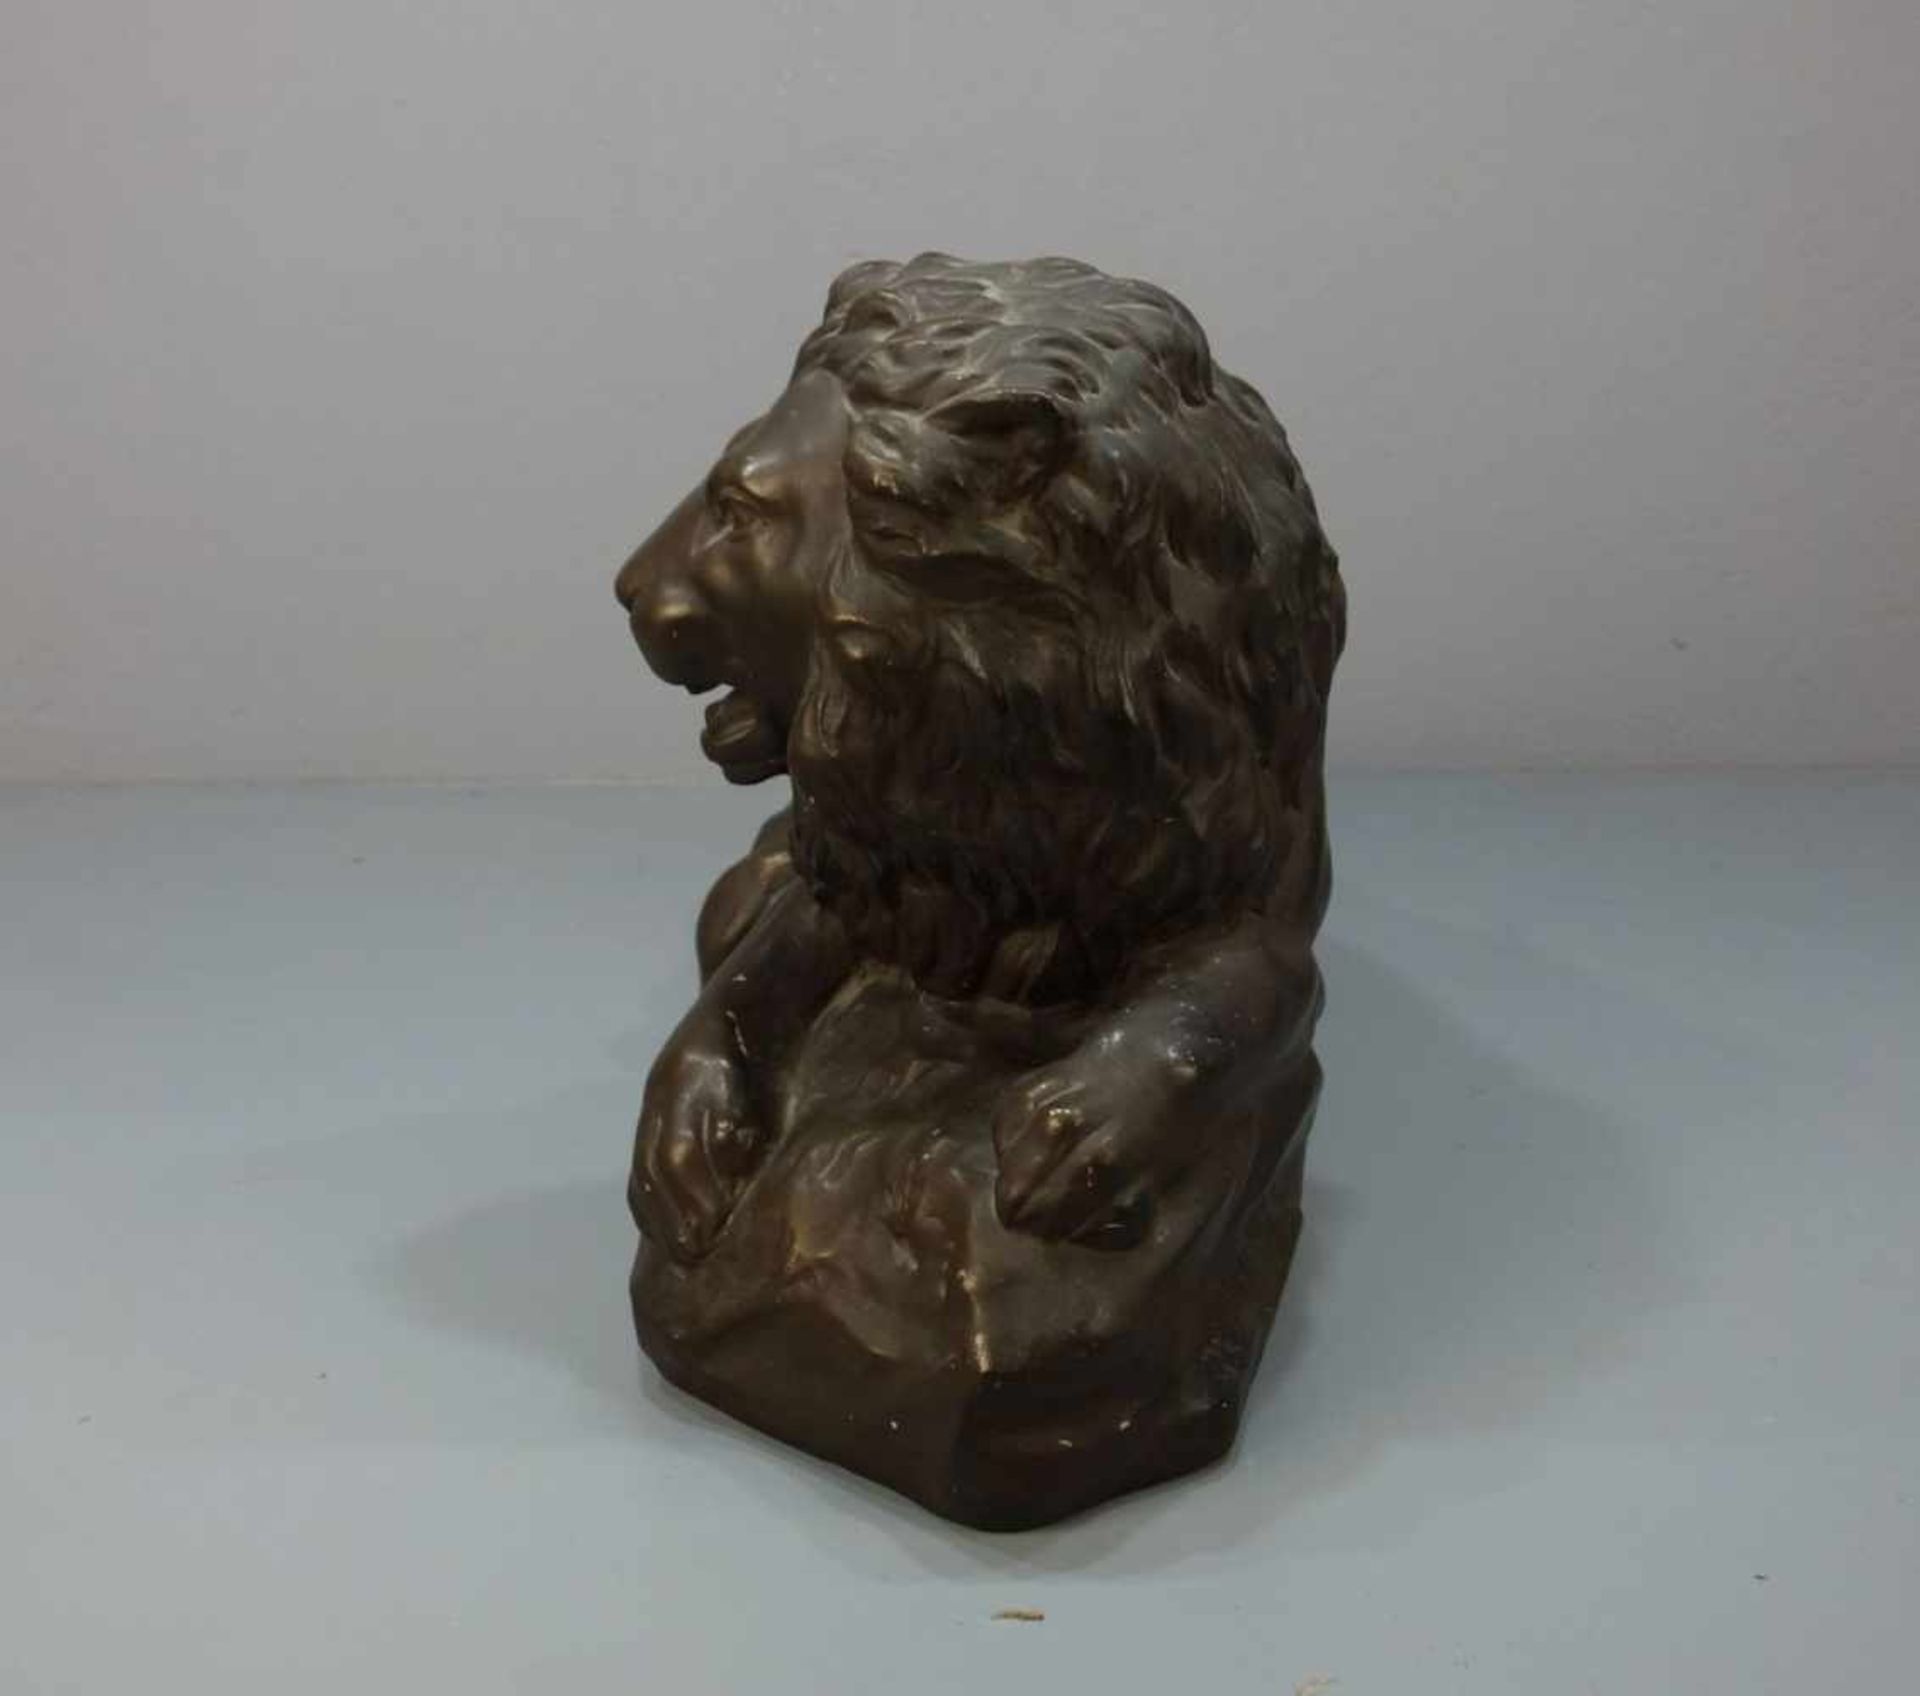 MOECKEL, P. E. (Bildhauer / Animalier des 20. Jh.), Skulptur: "Liegender Löwe", bronzierte Stukko- - Image 2 of 5